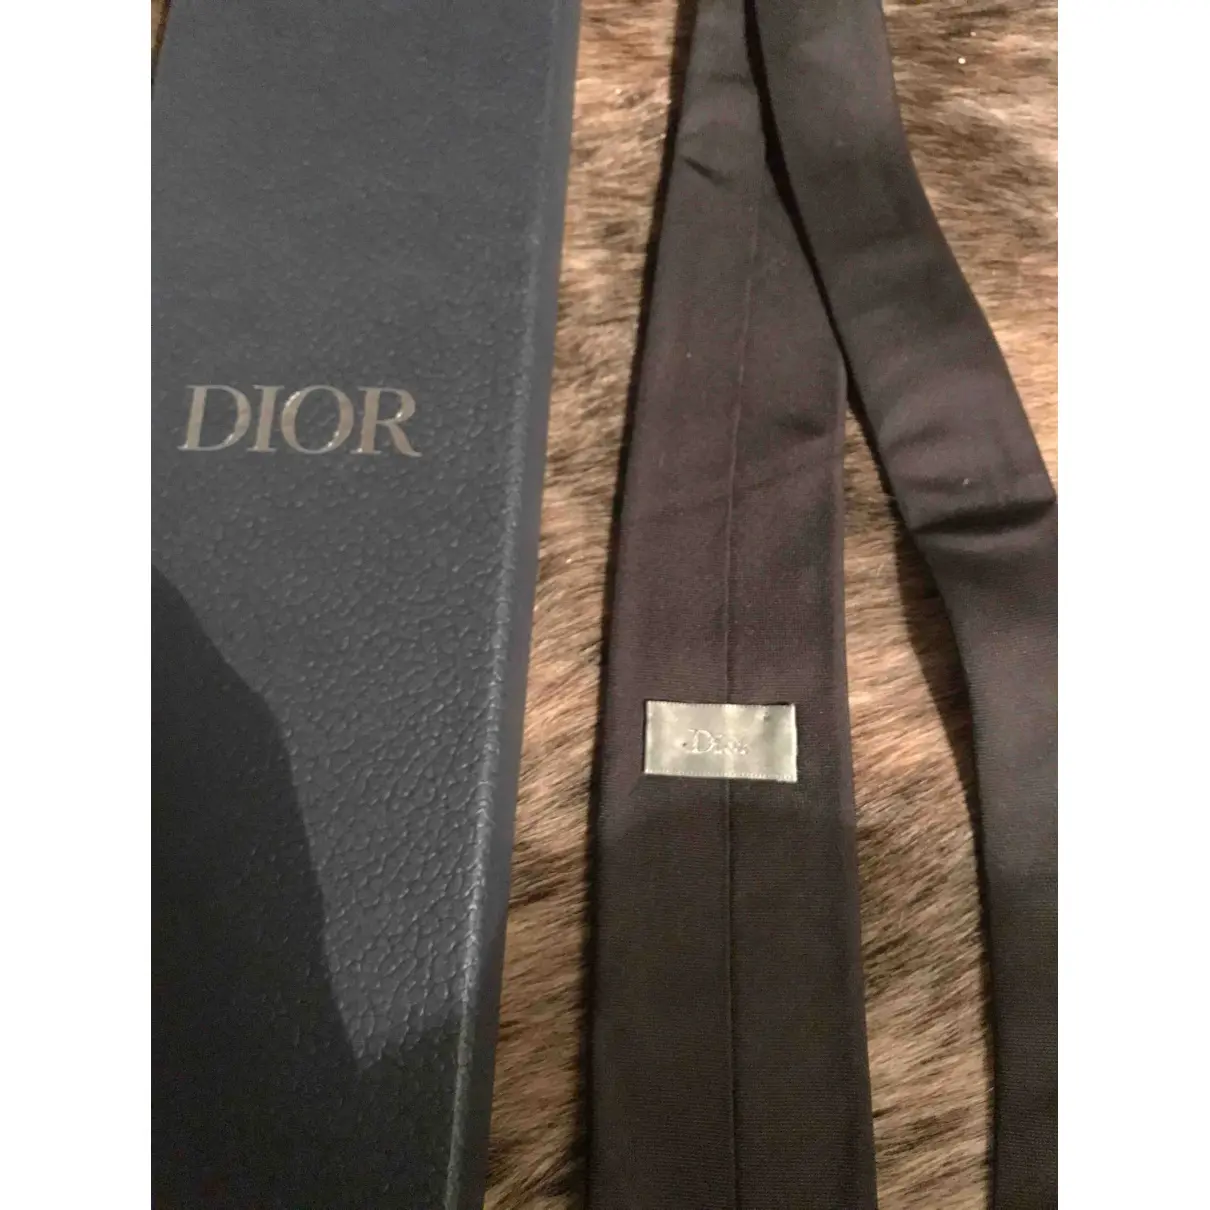 Luxury Dior Homme Ties Men